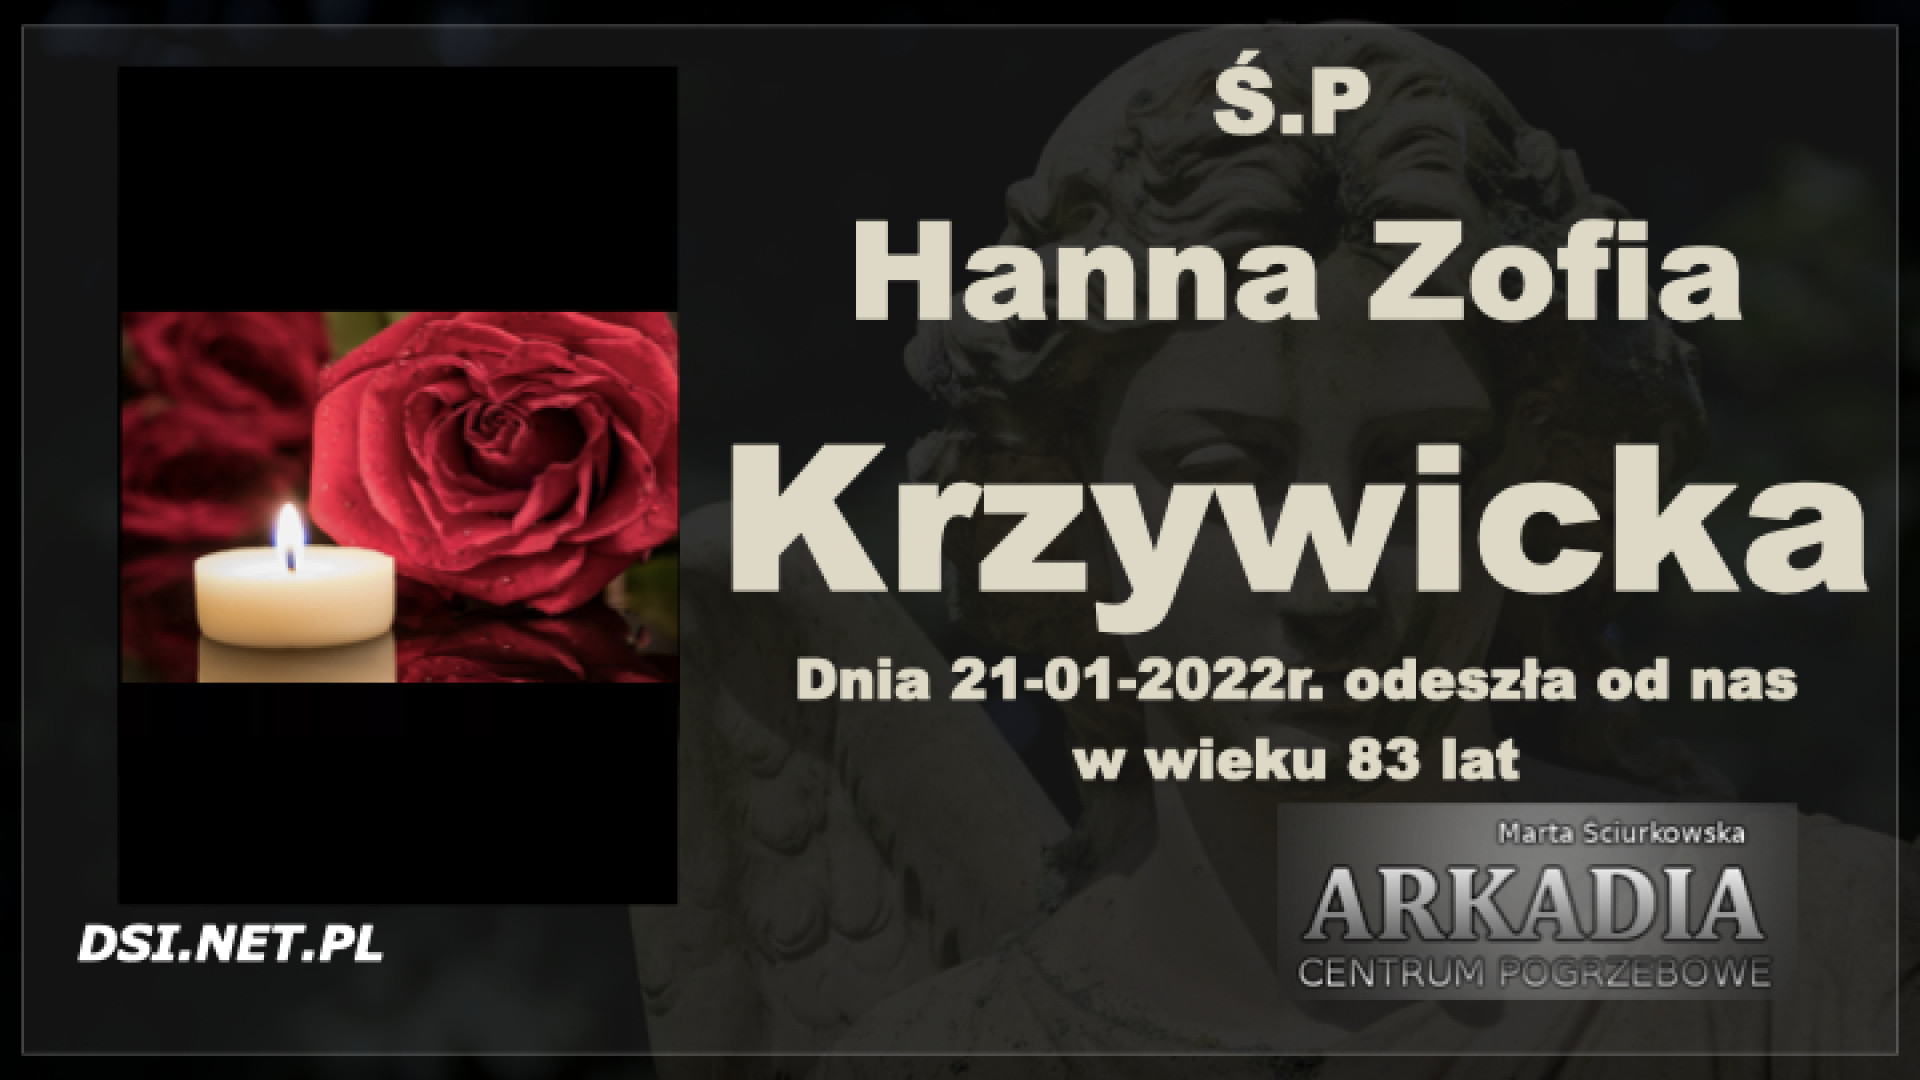 Ś.P. Hanna Zofia Krzywicka